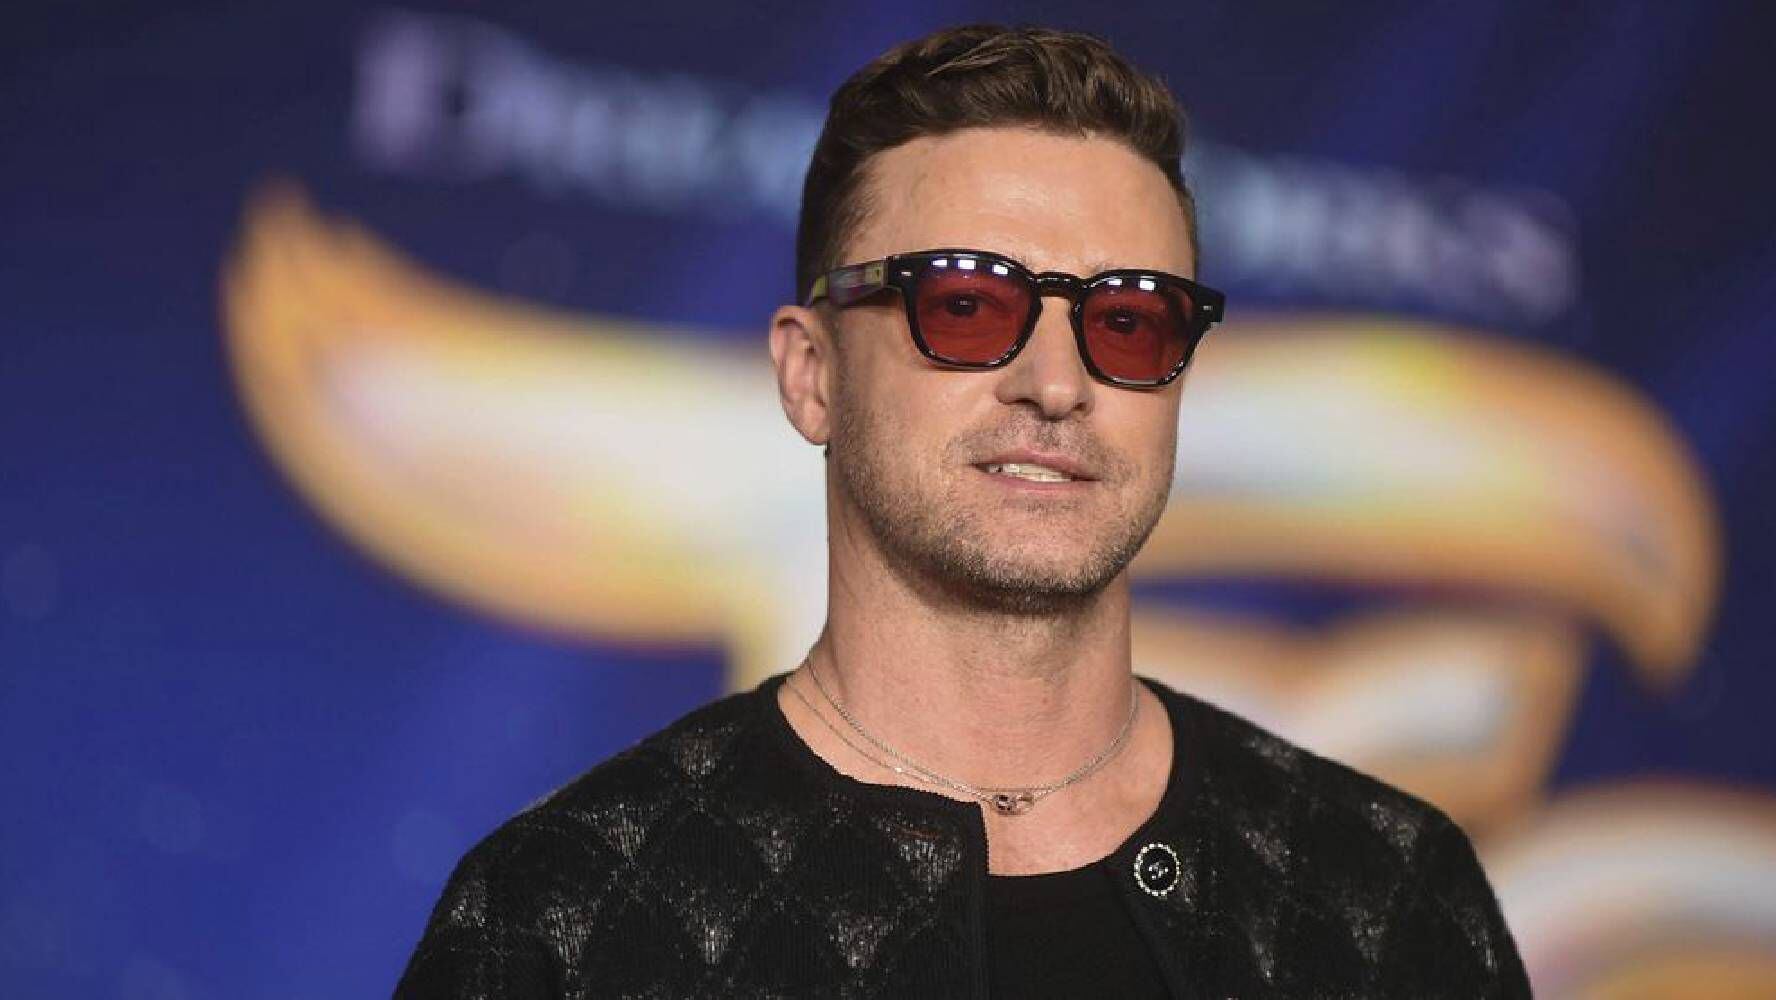 El cantante de 43 años, Justin Timberlake, fue detenido por conducir en estado de ebriedad. (Foto: Richard Shotwell/Invision/AP, File).